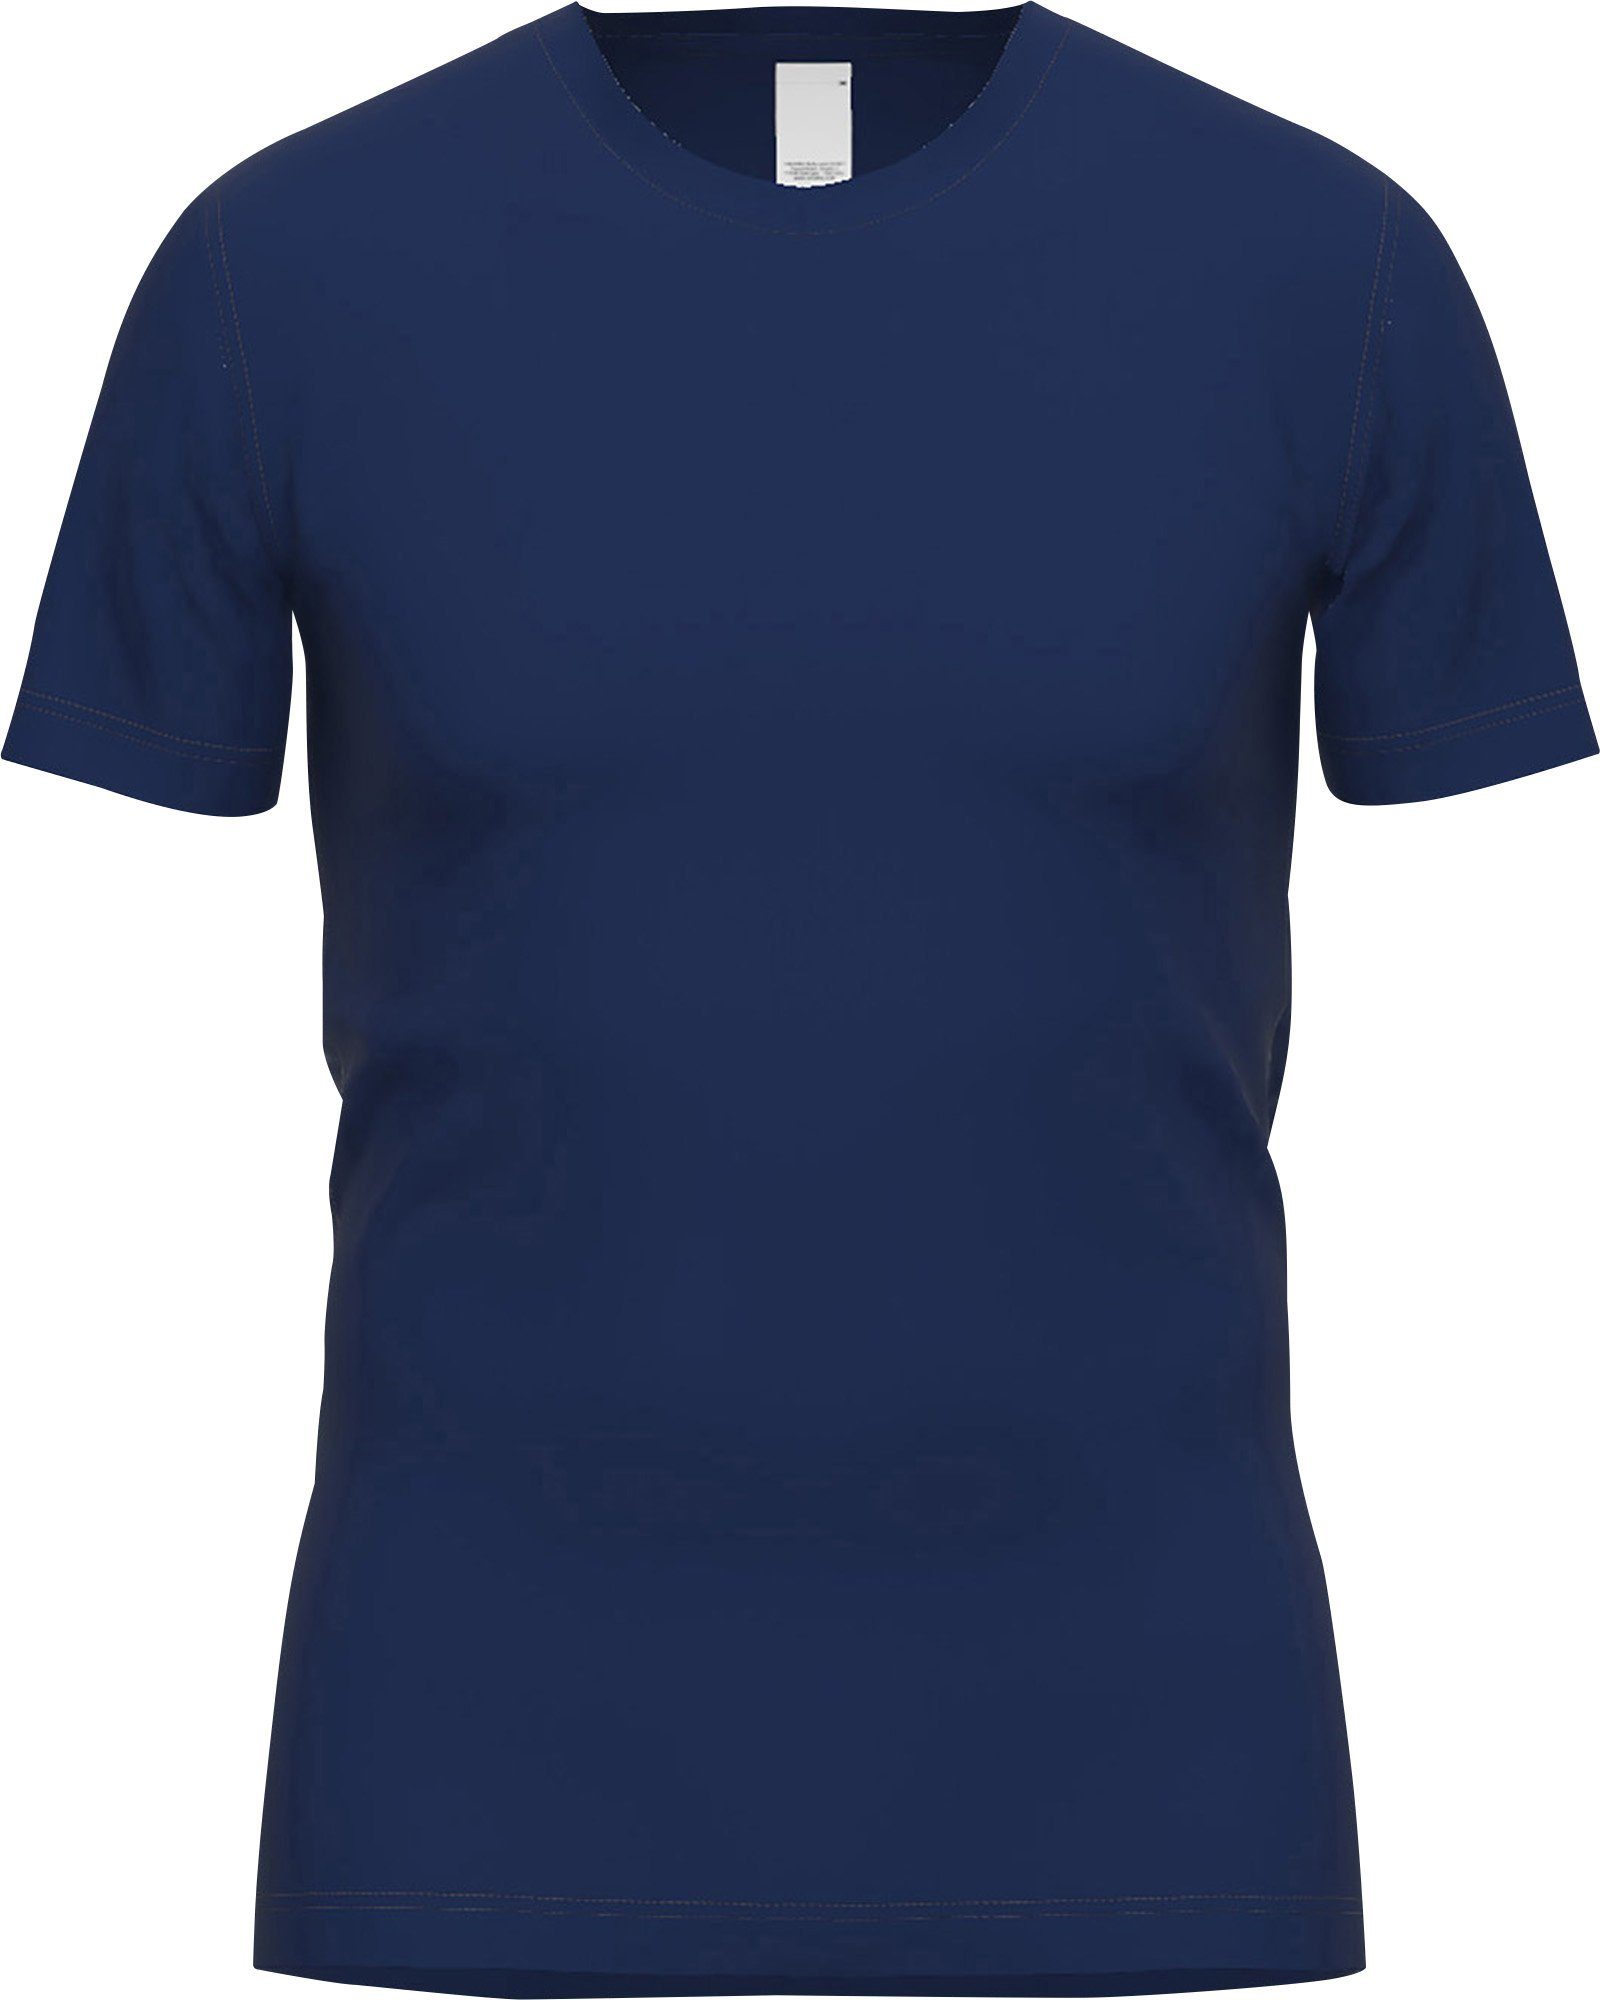 Interlock-Jersey GÖTZBURG Unterhemd blau-dunkel Herren-Thermo-Unterhemd, Uni 1/2-Arm